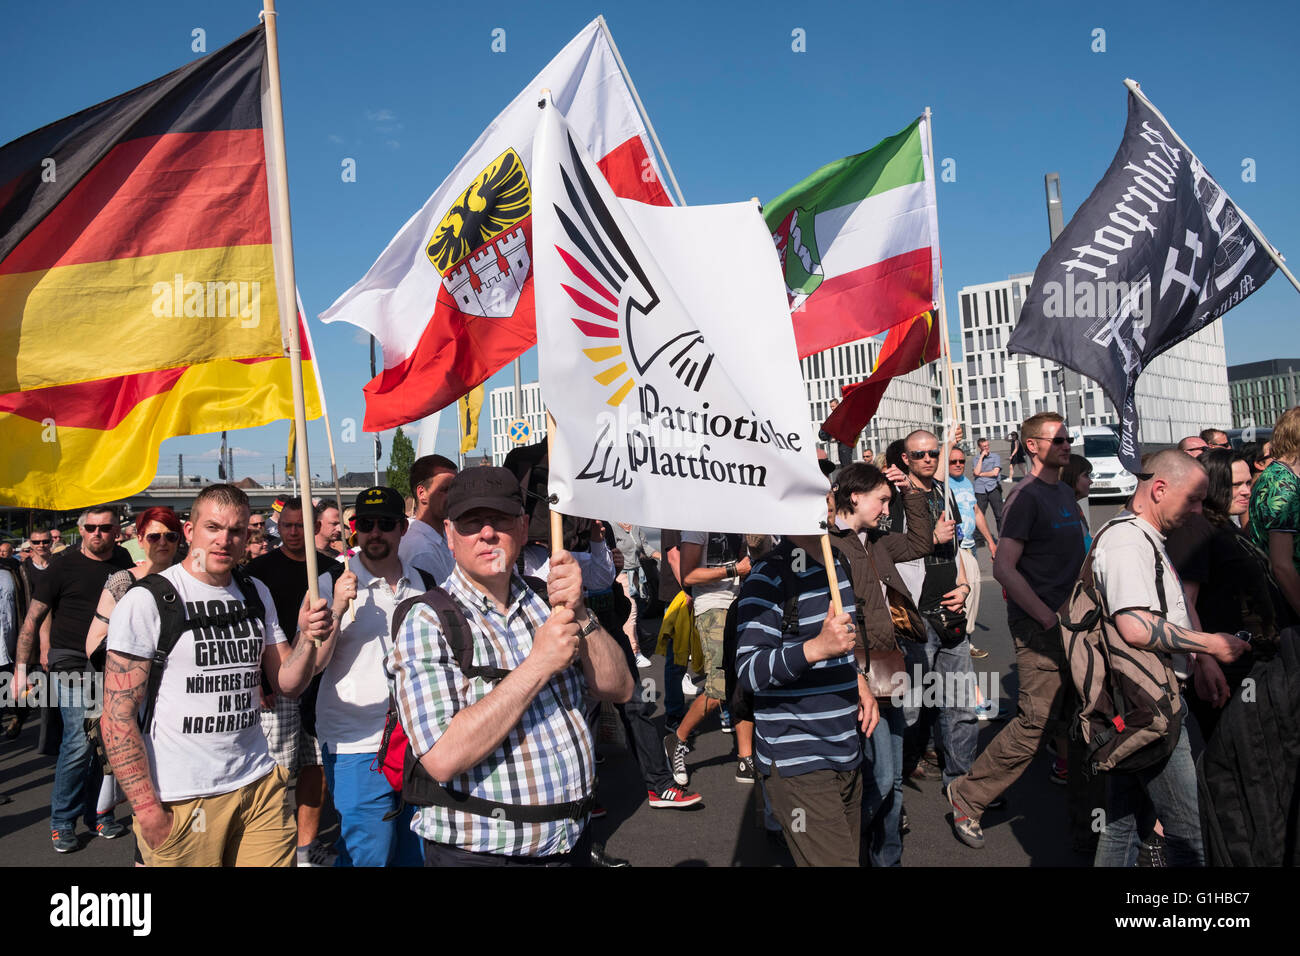 Los manifestantes de extrema derecha protesta contra el Islam, refugiados y Angela Merkel en Berlín. Foto de stock